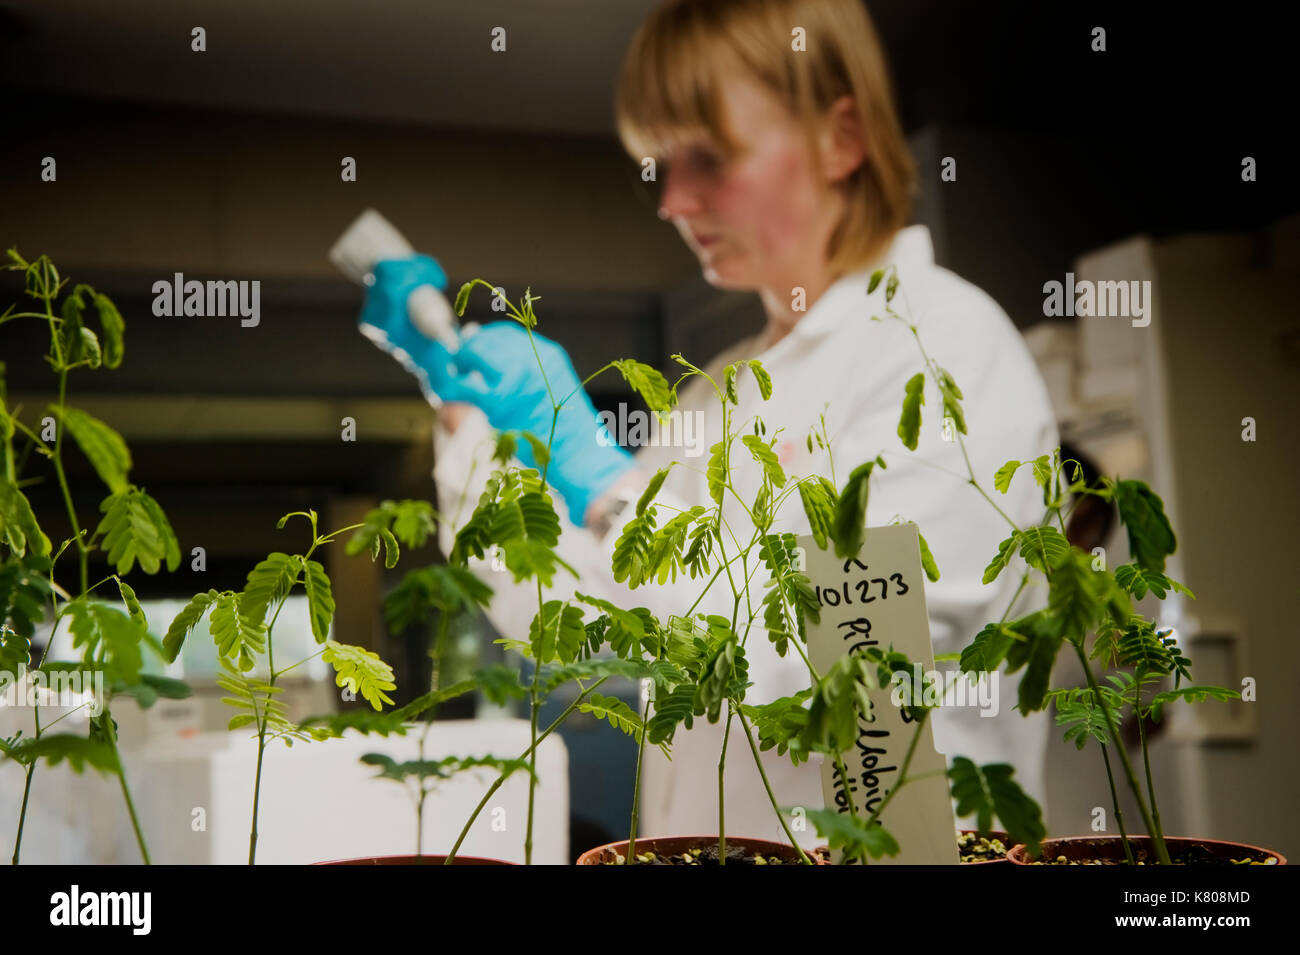 Anlage Wissenschaftler verwendet die Pipette in die Erforschung der Genexpression von Erbsen in den Labors von Millennium Seed Bank, Wakehust, Sussex, UK. Stockfoto